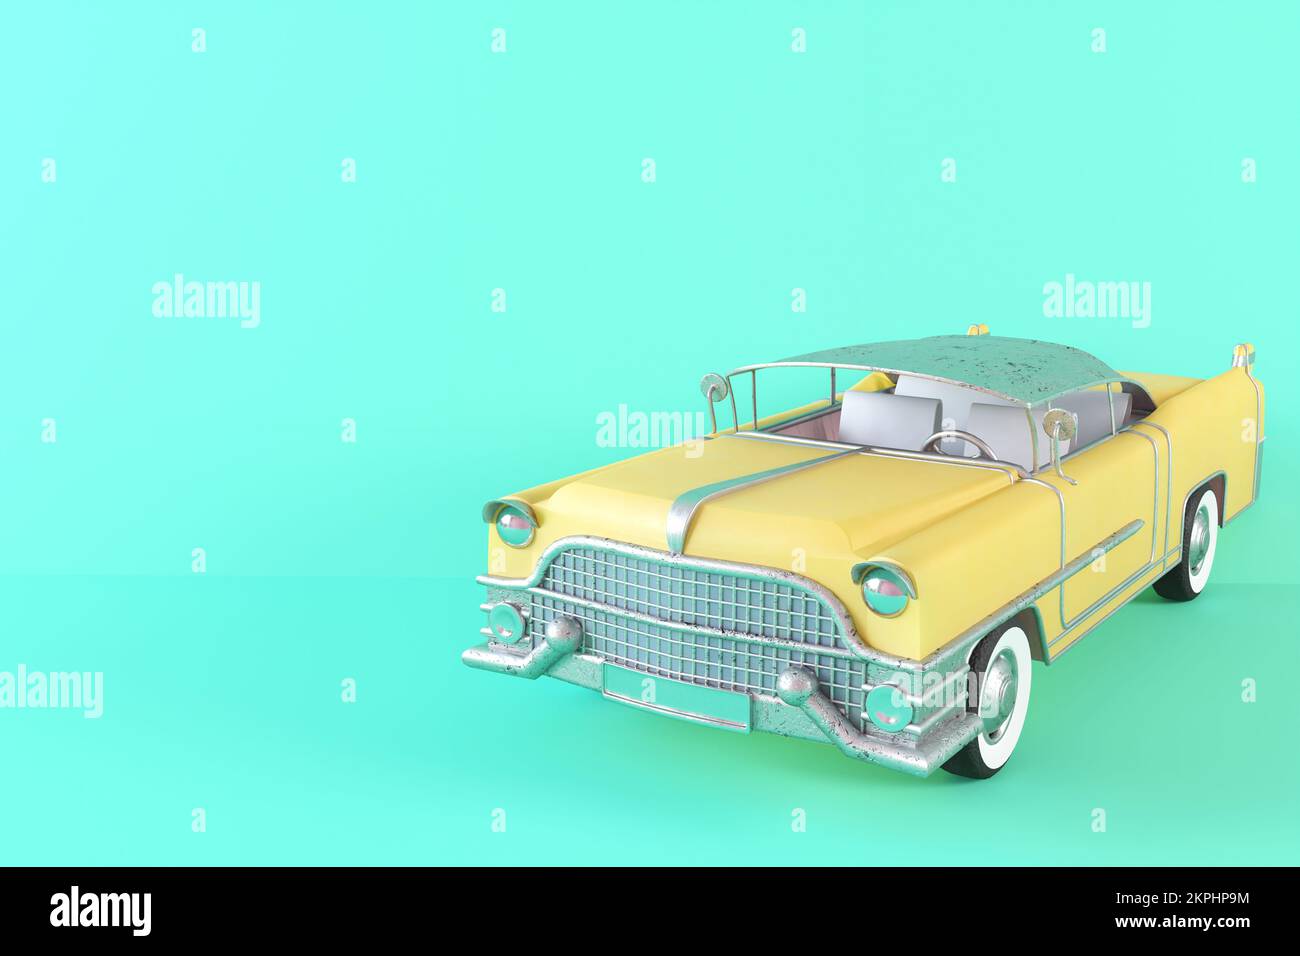 Gelbes Spielzeugauto im Vintage-Look auf grünem Hintergrund 3D-Abbildung. Maßstabsgetreues Modell eines Retro-Autos in alten grünen und gelben Farben. Klassisches, seltenes Auto. Stilisiertes Spielzeug Stockfoto